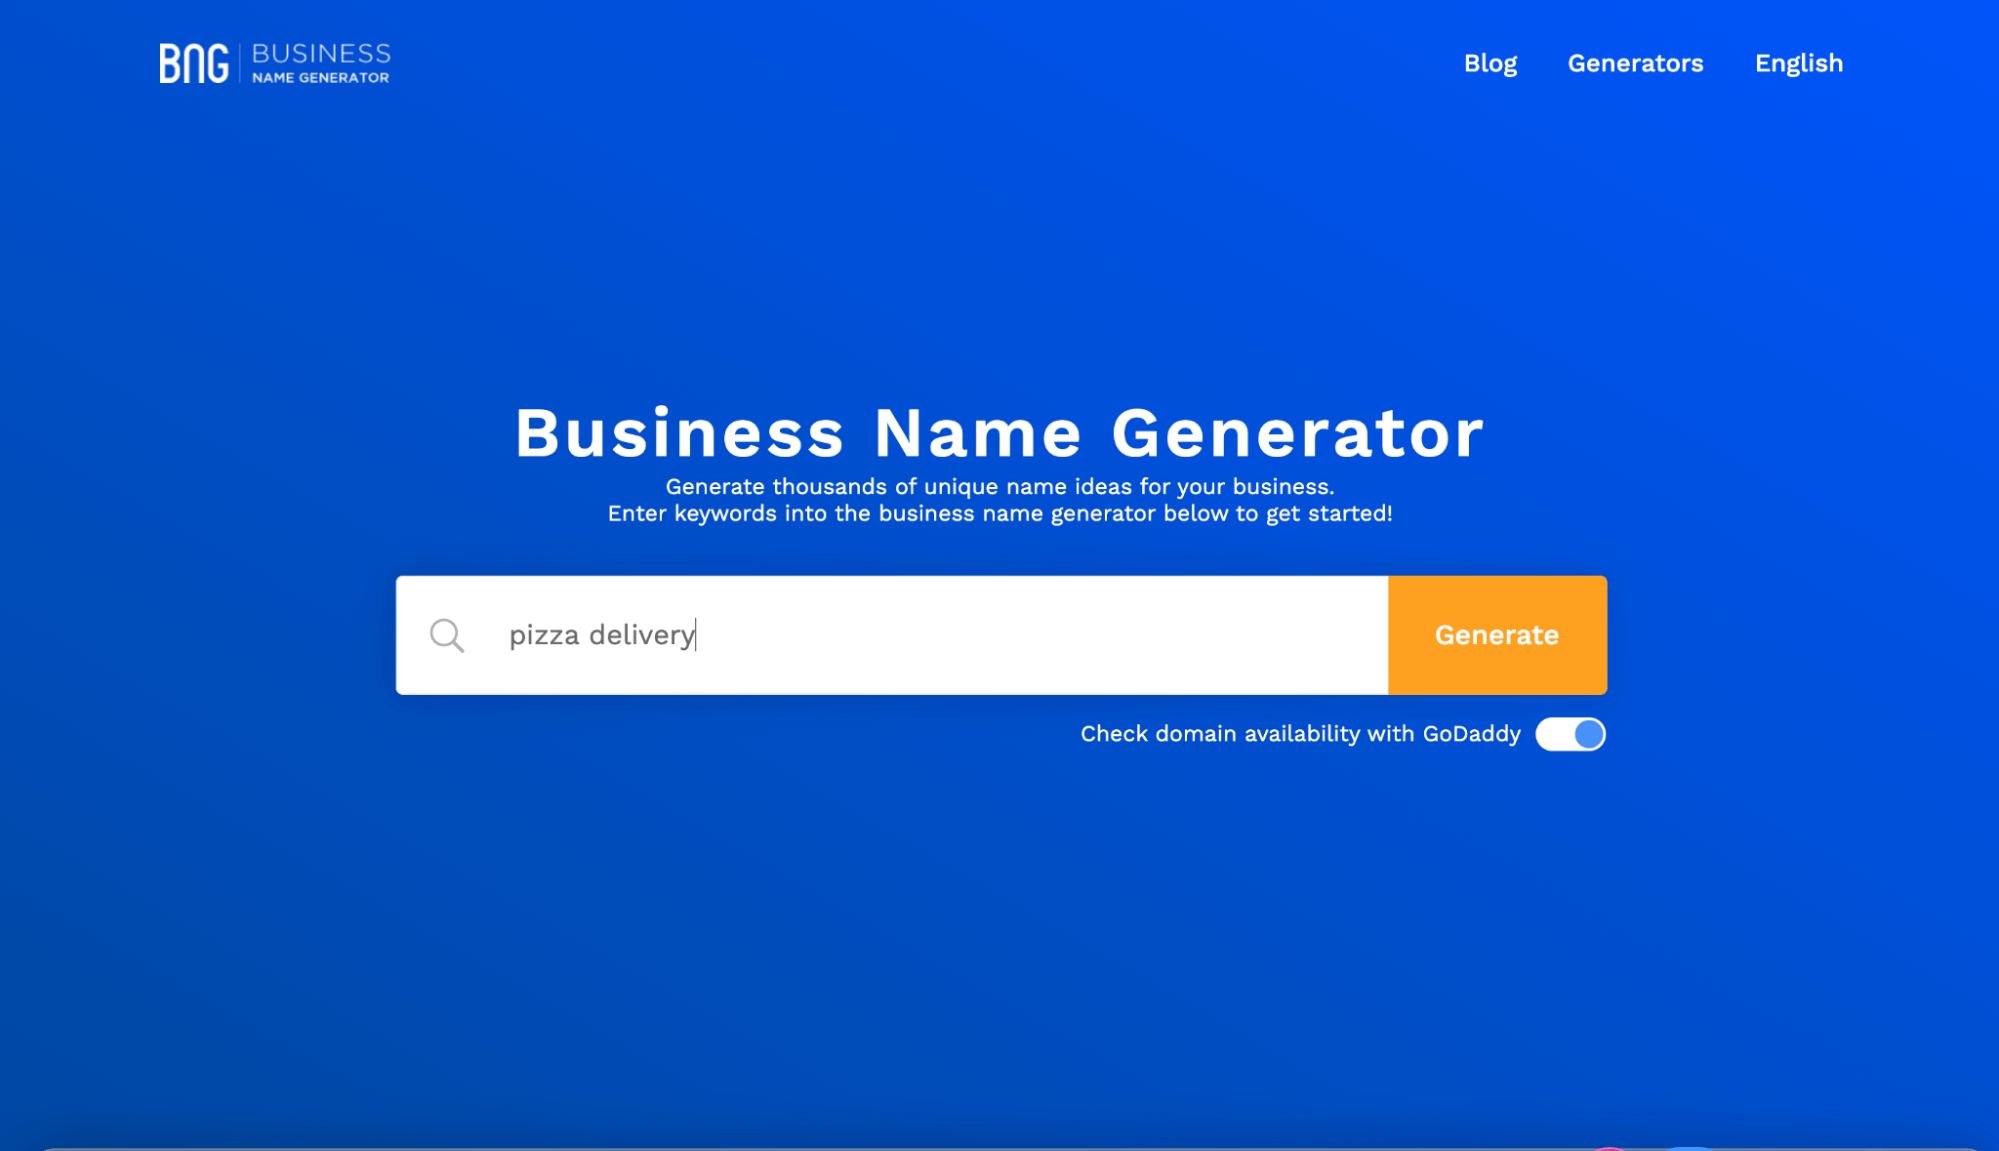 Name generator!!